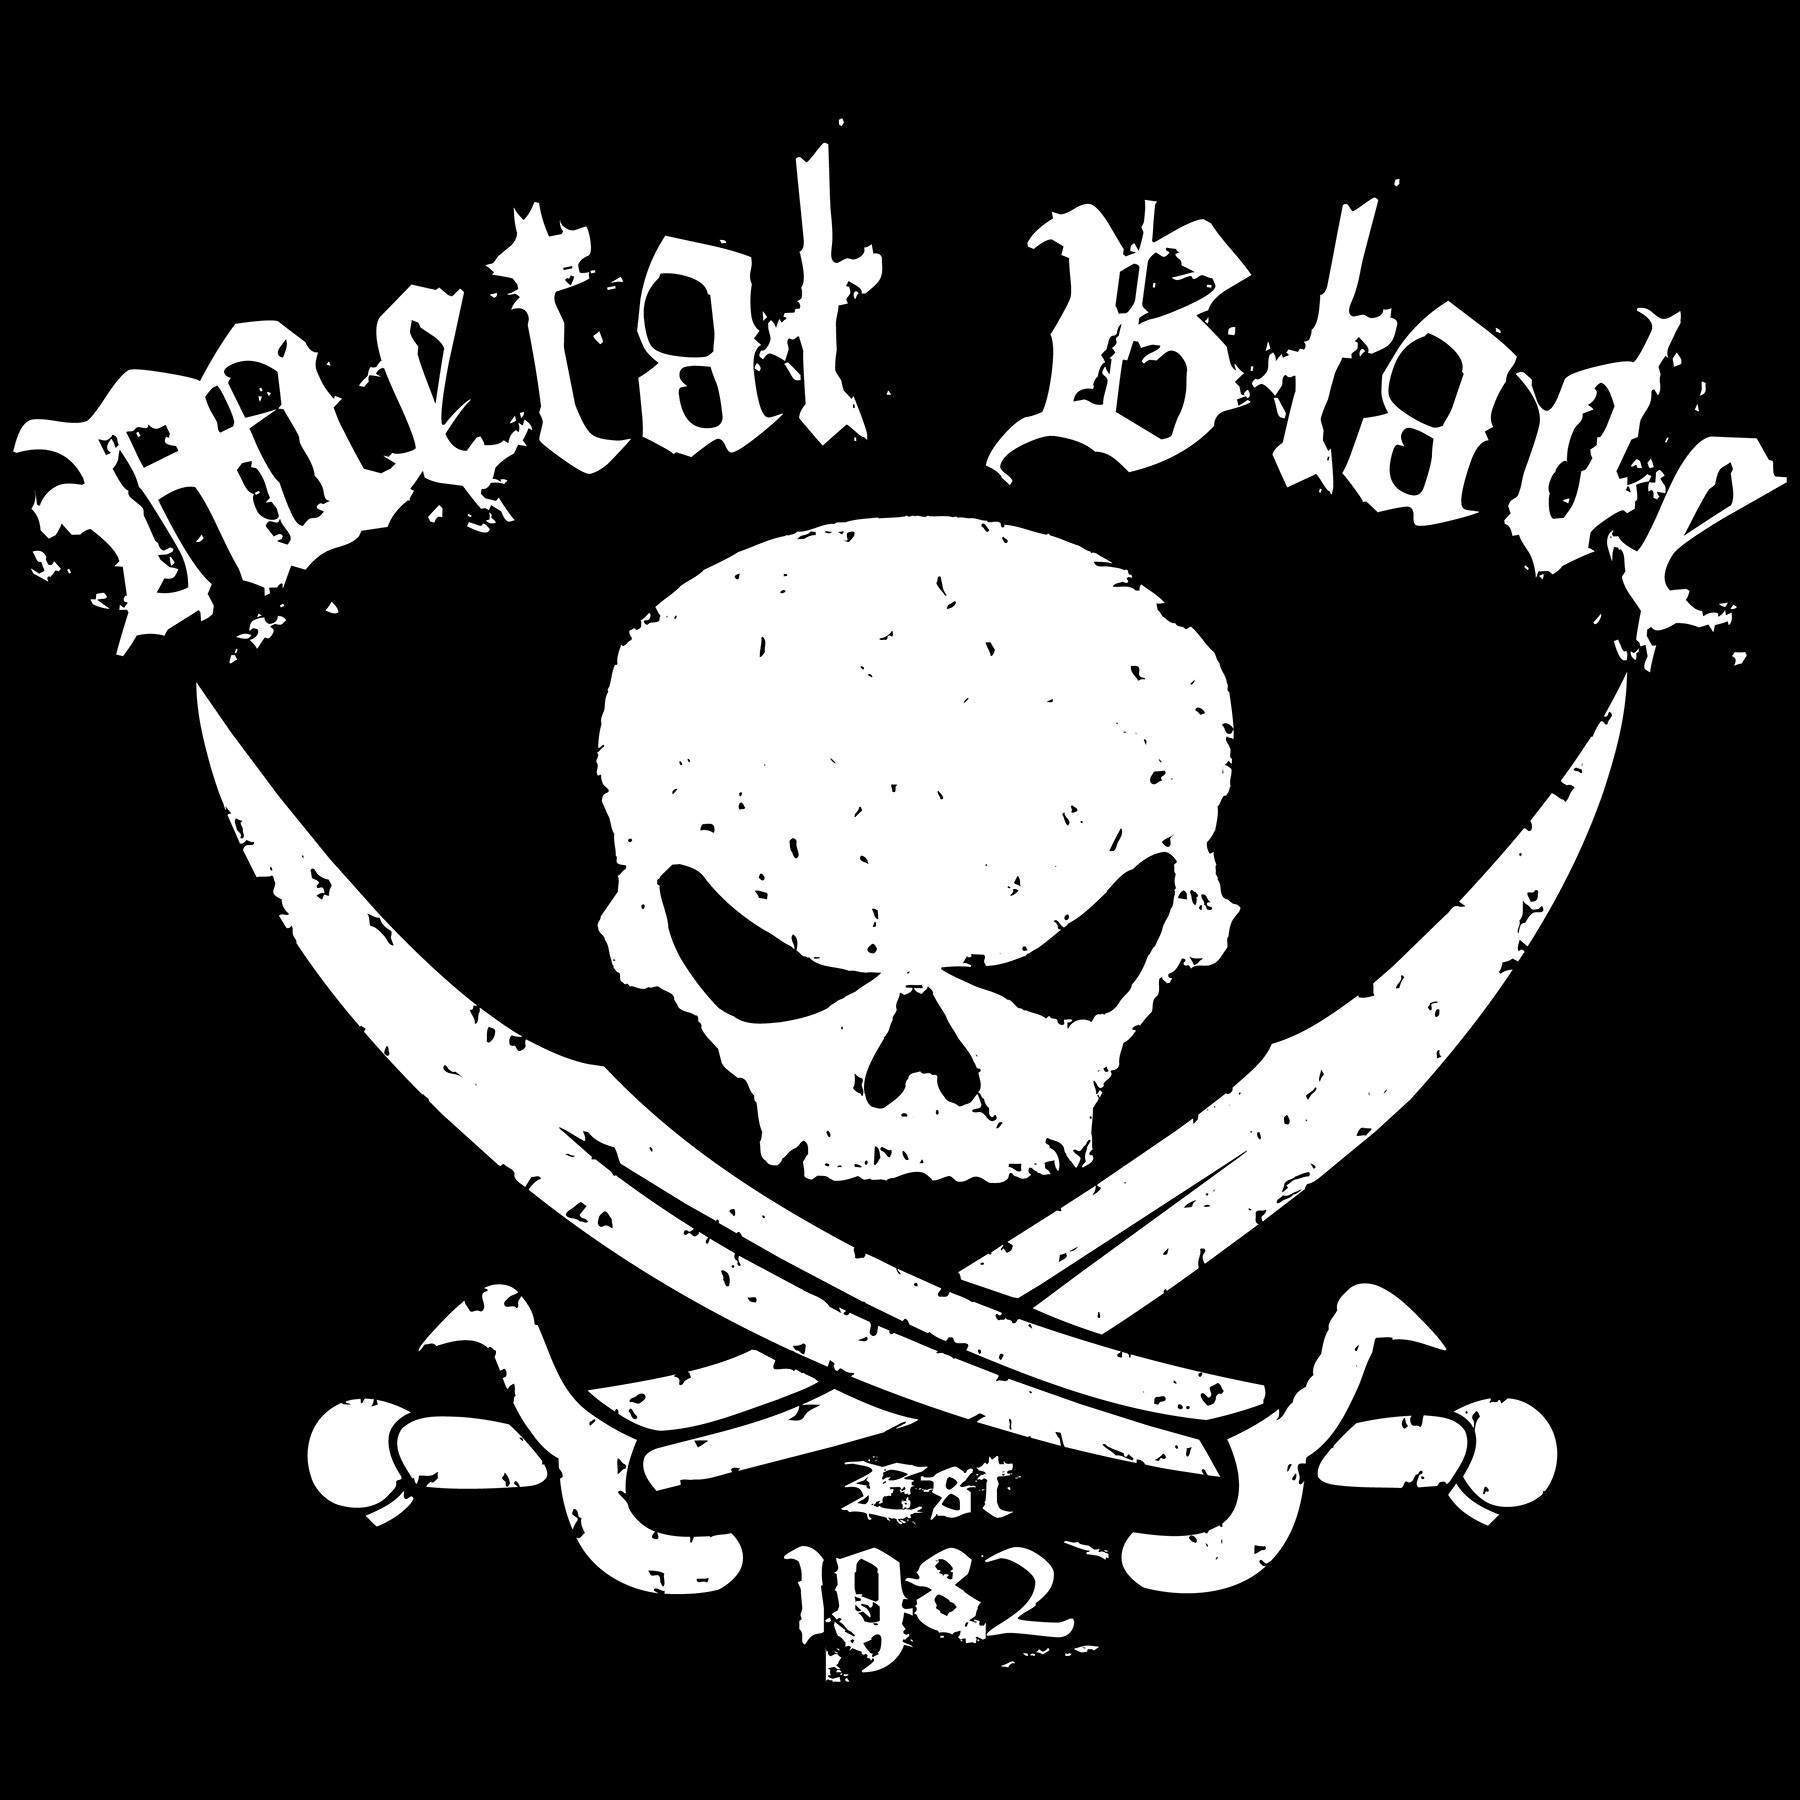 Metal blade logo